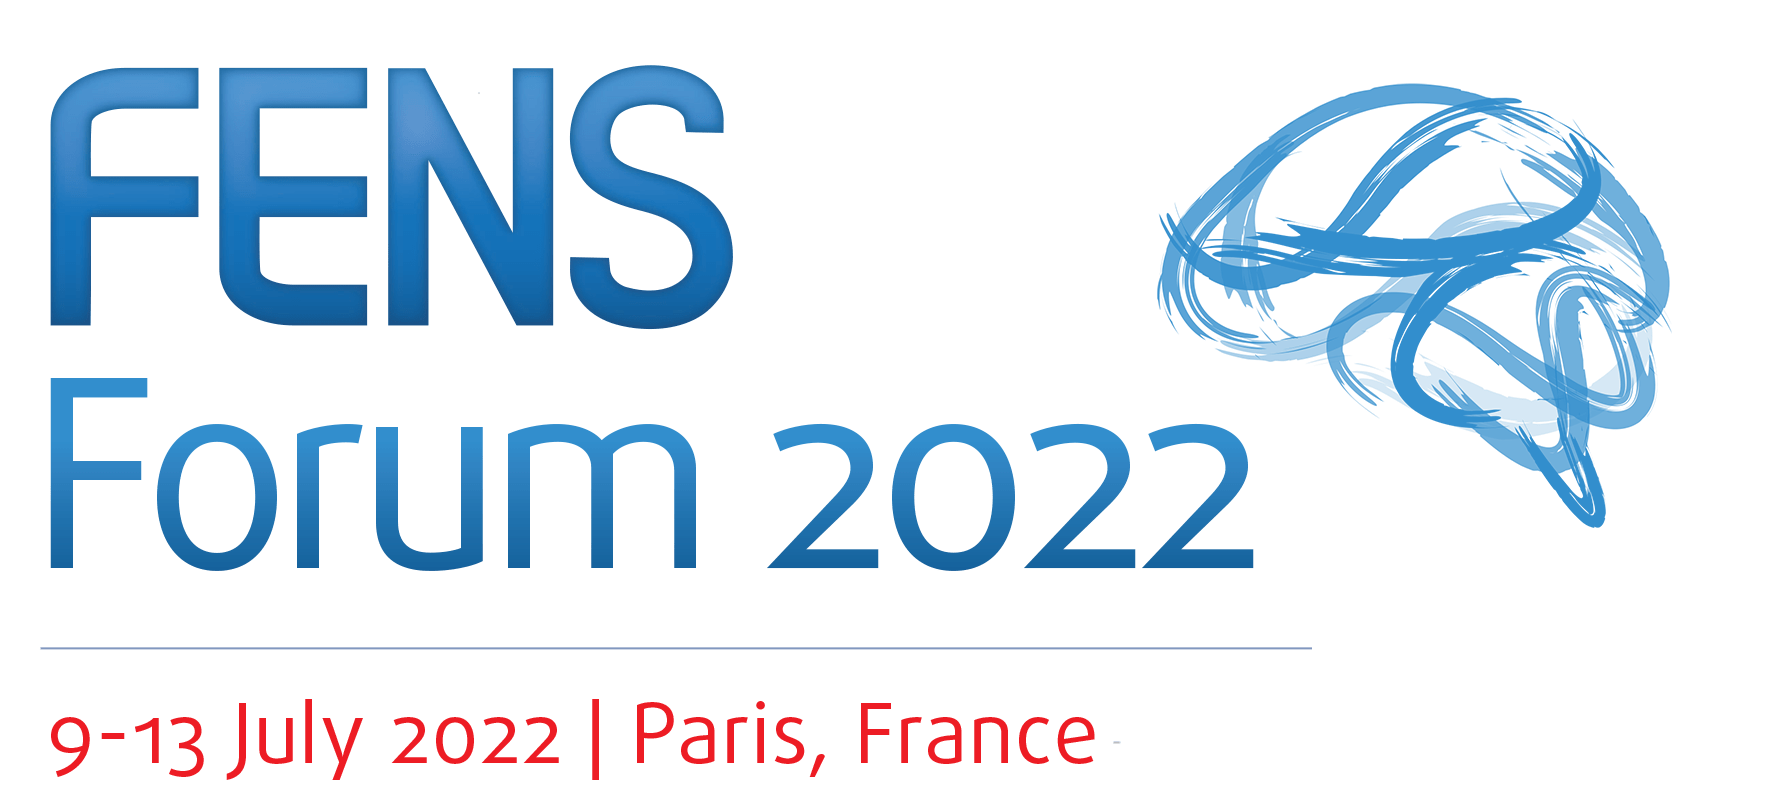 #FENS2022 Social Media Ambassadors - FENS 2022 - International Neuroscience Conference